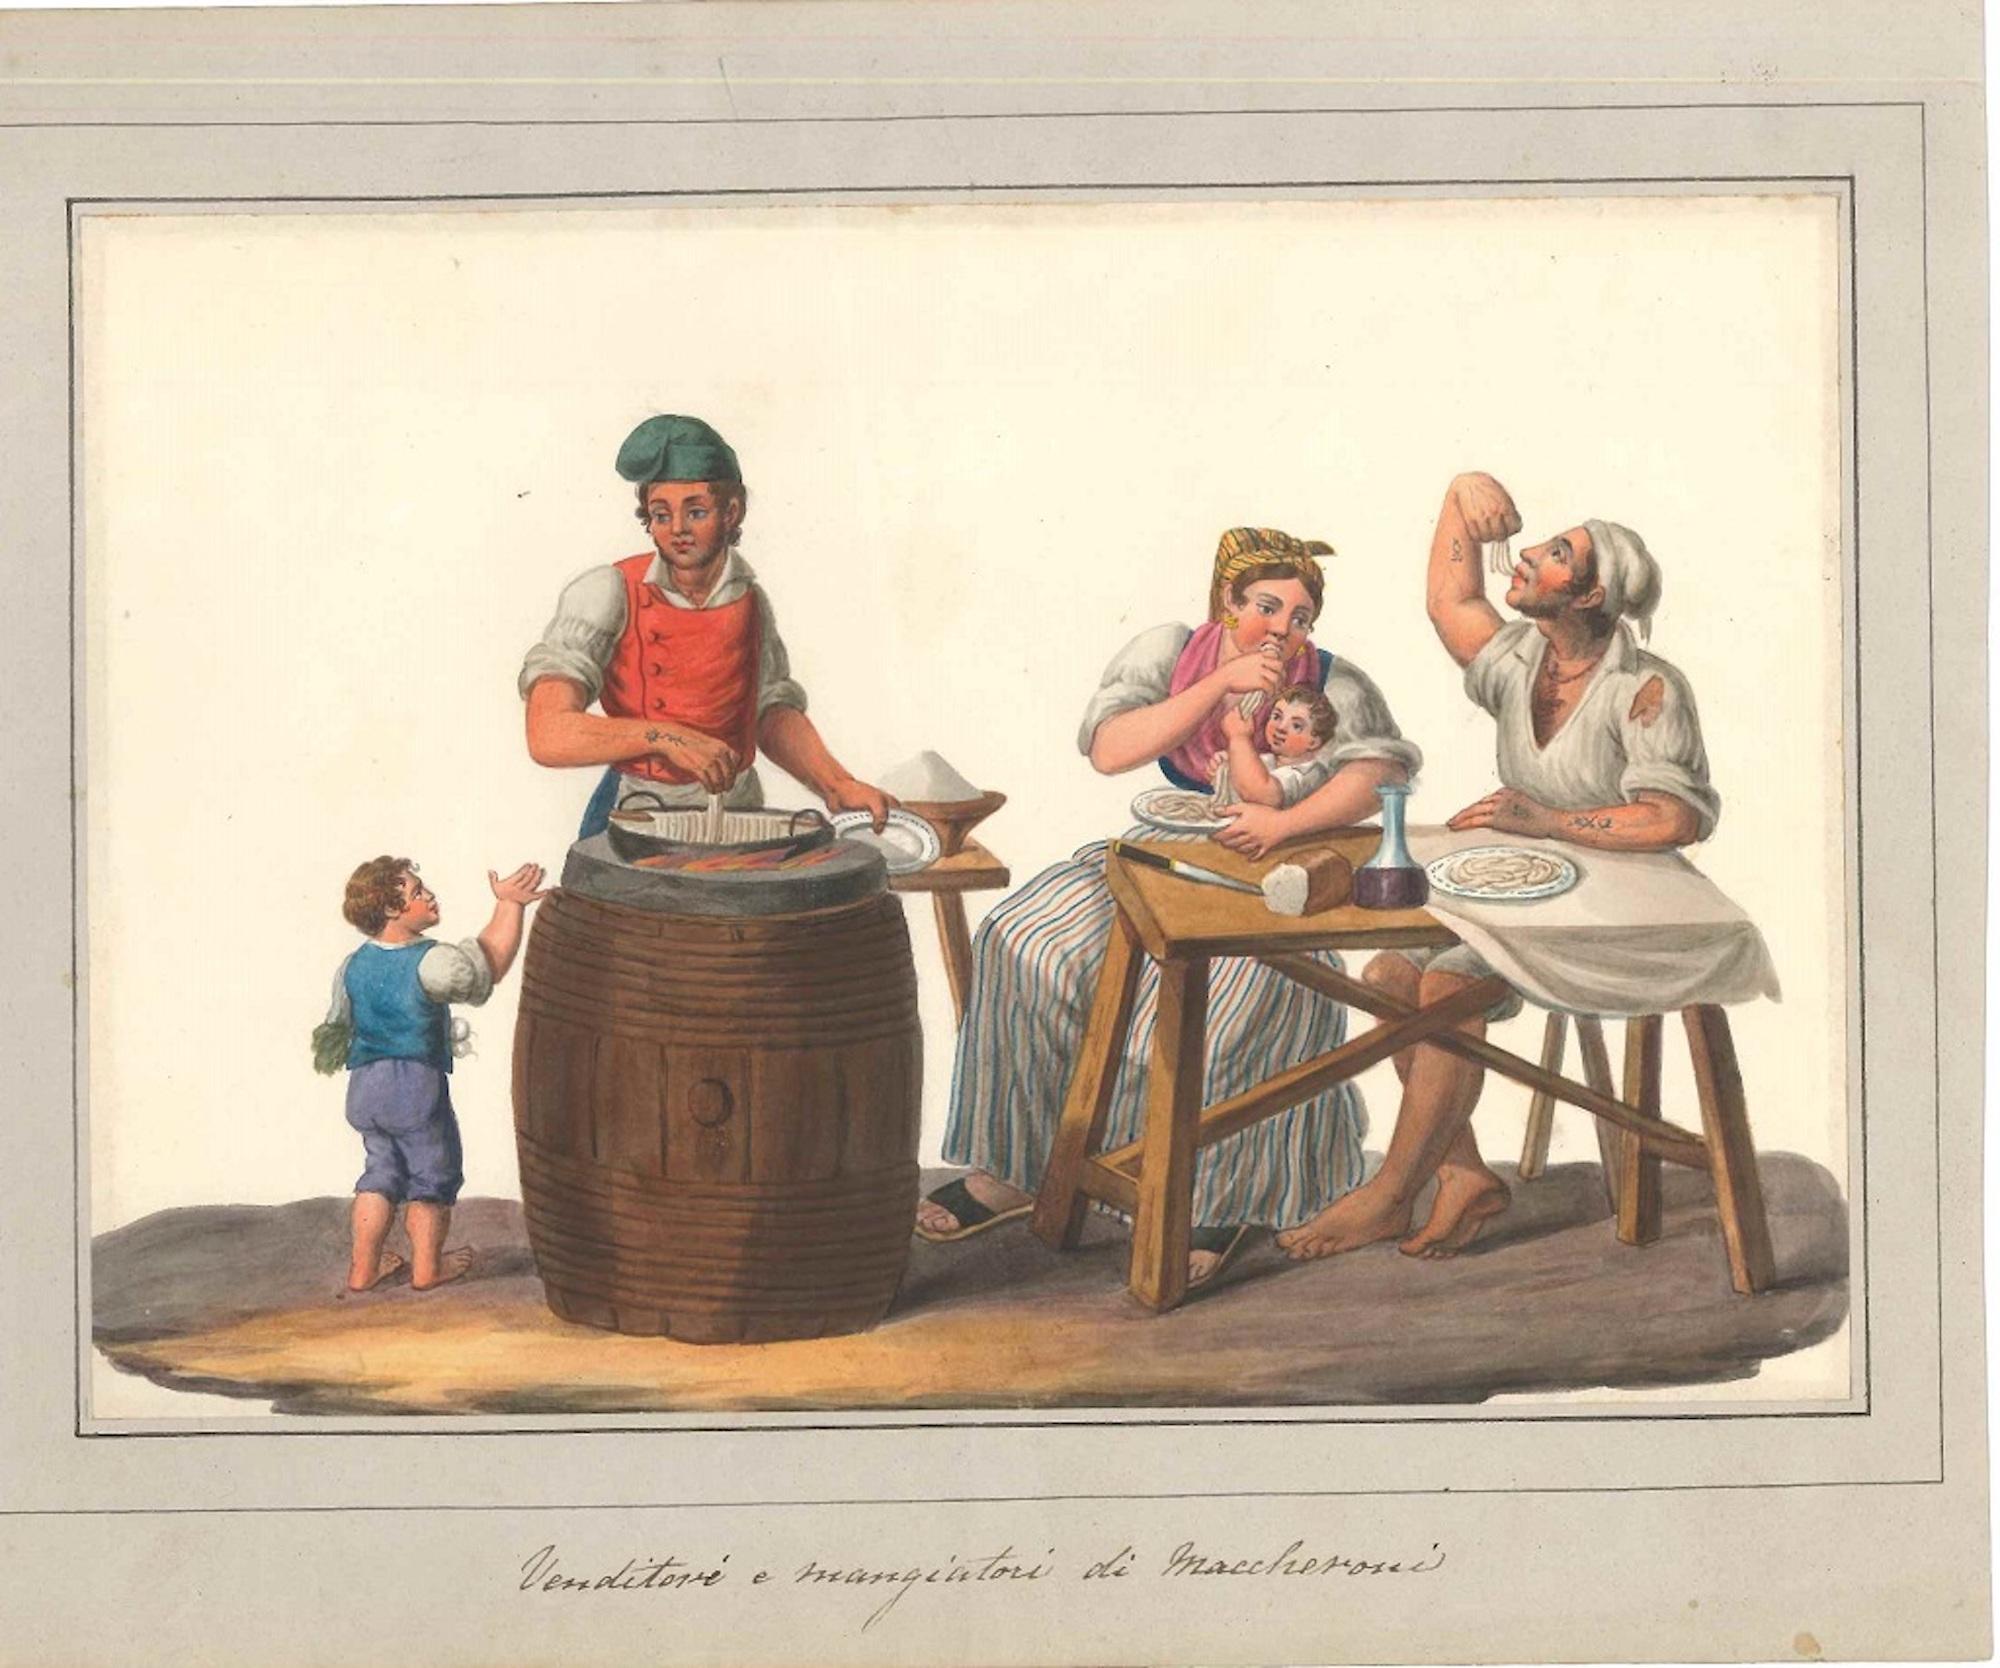 Venditori e Mangiatori di Maccheroni - Watercolor by M. De Vito - 1820 ca.